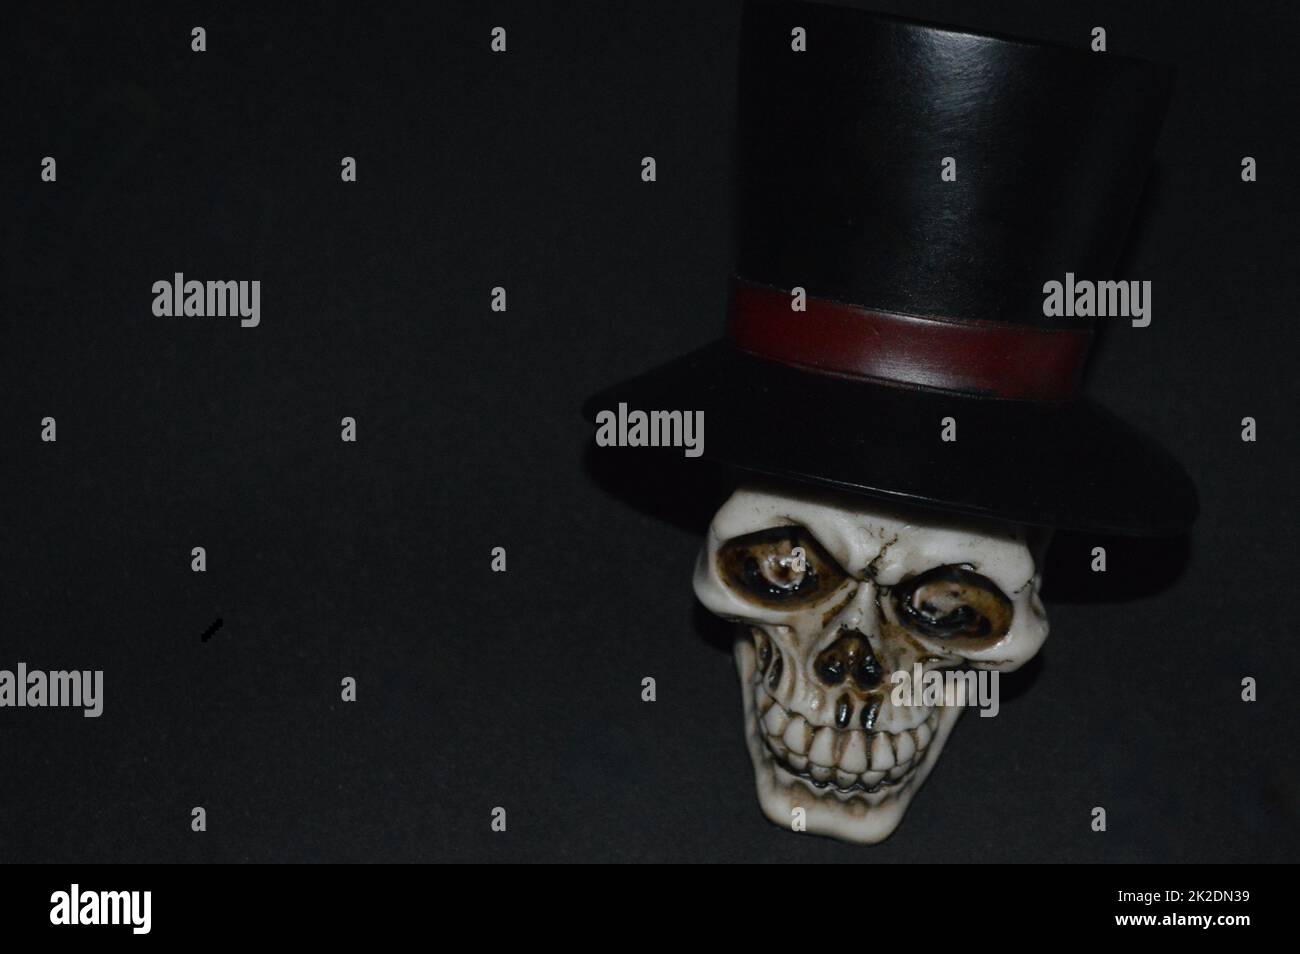 Voodoo skull with top hat in a dark room Stock Photo